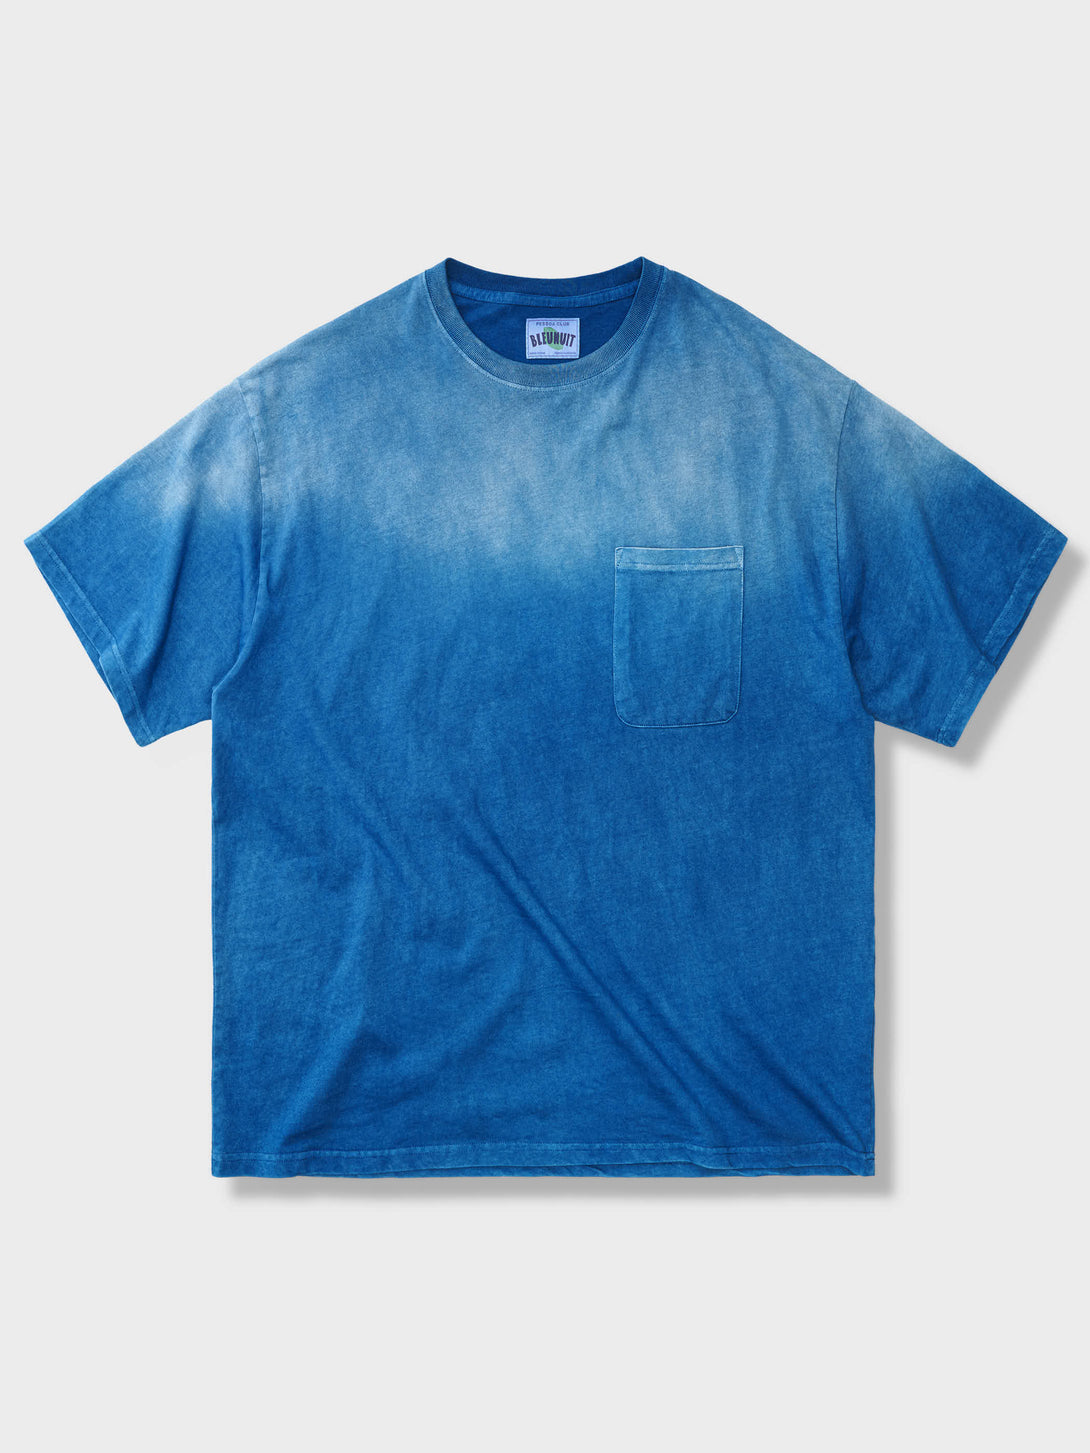 藍染めグラデーションTシャツ、ダークブルーとライトブルーの2色展開